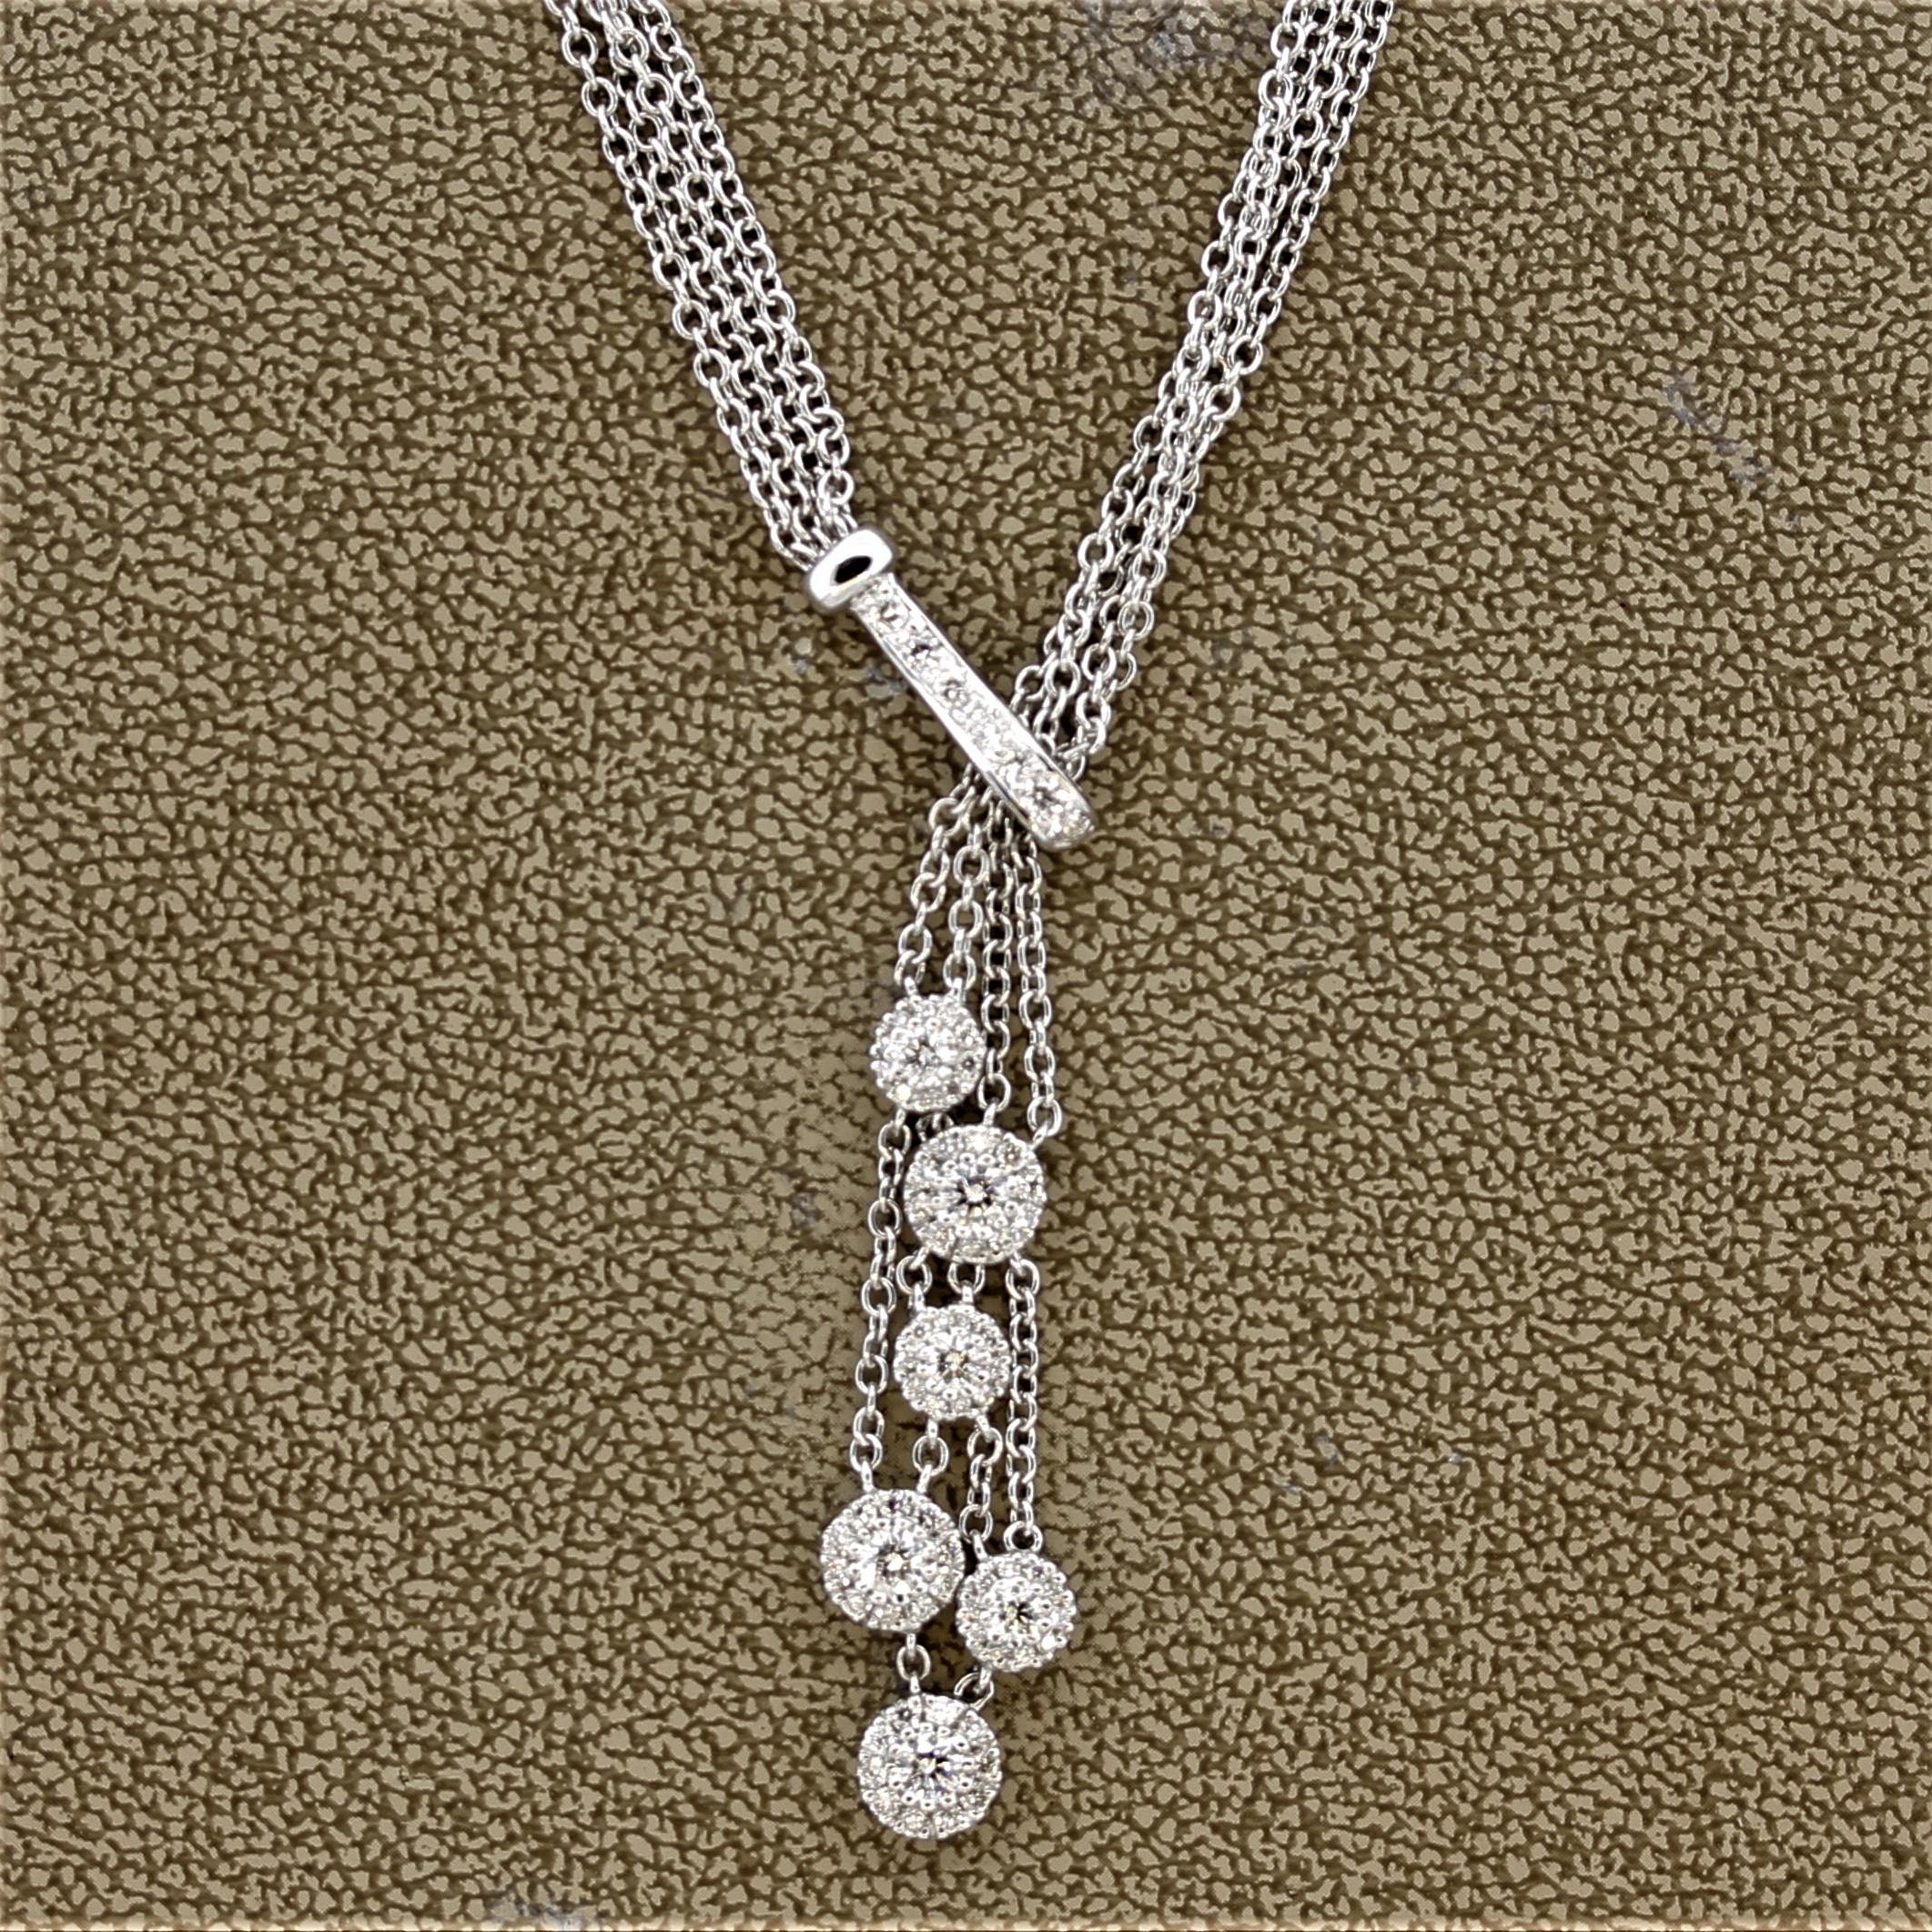 Eine elegante und schicke Halskette aus 18 Karat Weißgold. Er ist mit 1,05 Karat runden Diamanten im Brillantschliff besetzt, die in einem floralen Muster gefasst sind und die Goldverzierung betonen. Die 4-reihige Halskette verleiht jedem Outfit das